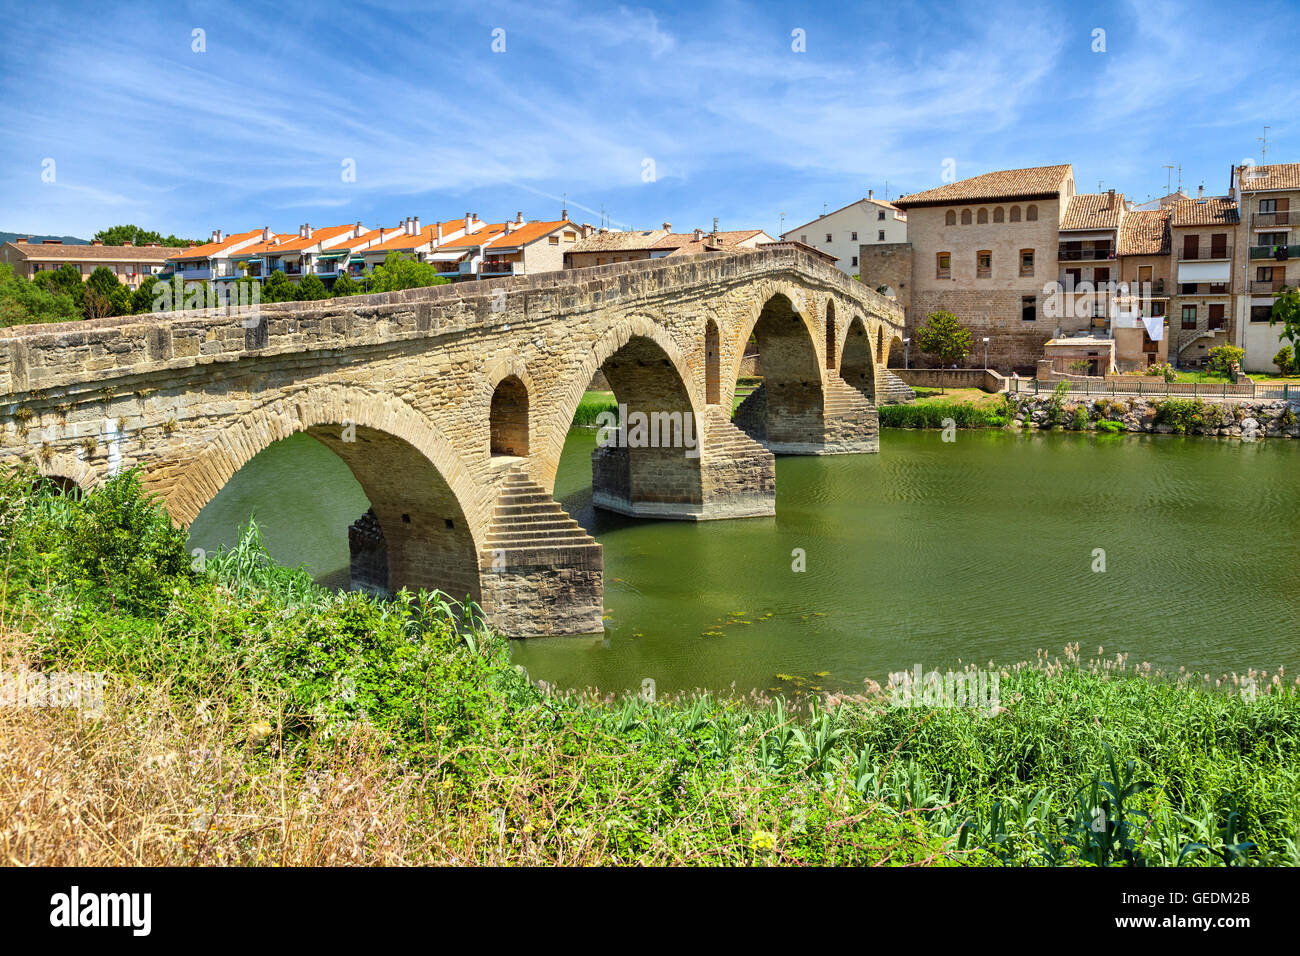 Romano antiguo puente que cruza el río Arga en Puente la Reina, cerca de Pamplona, Navarra, España Foto de stock